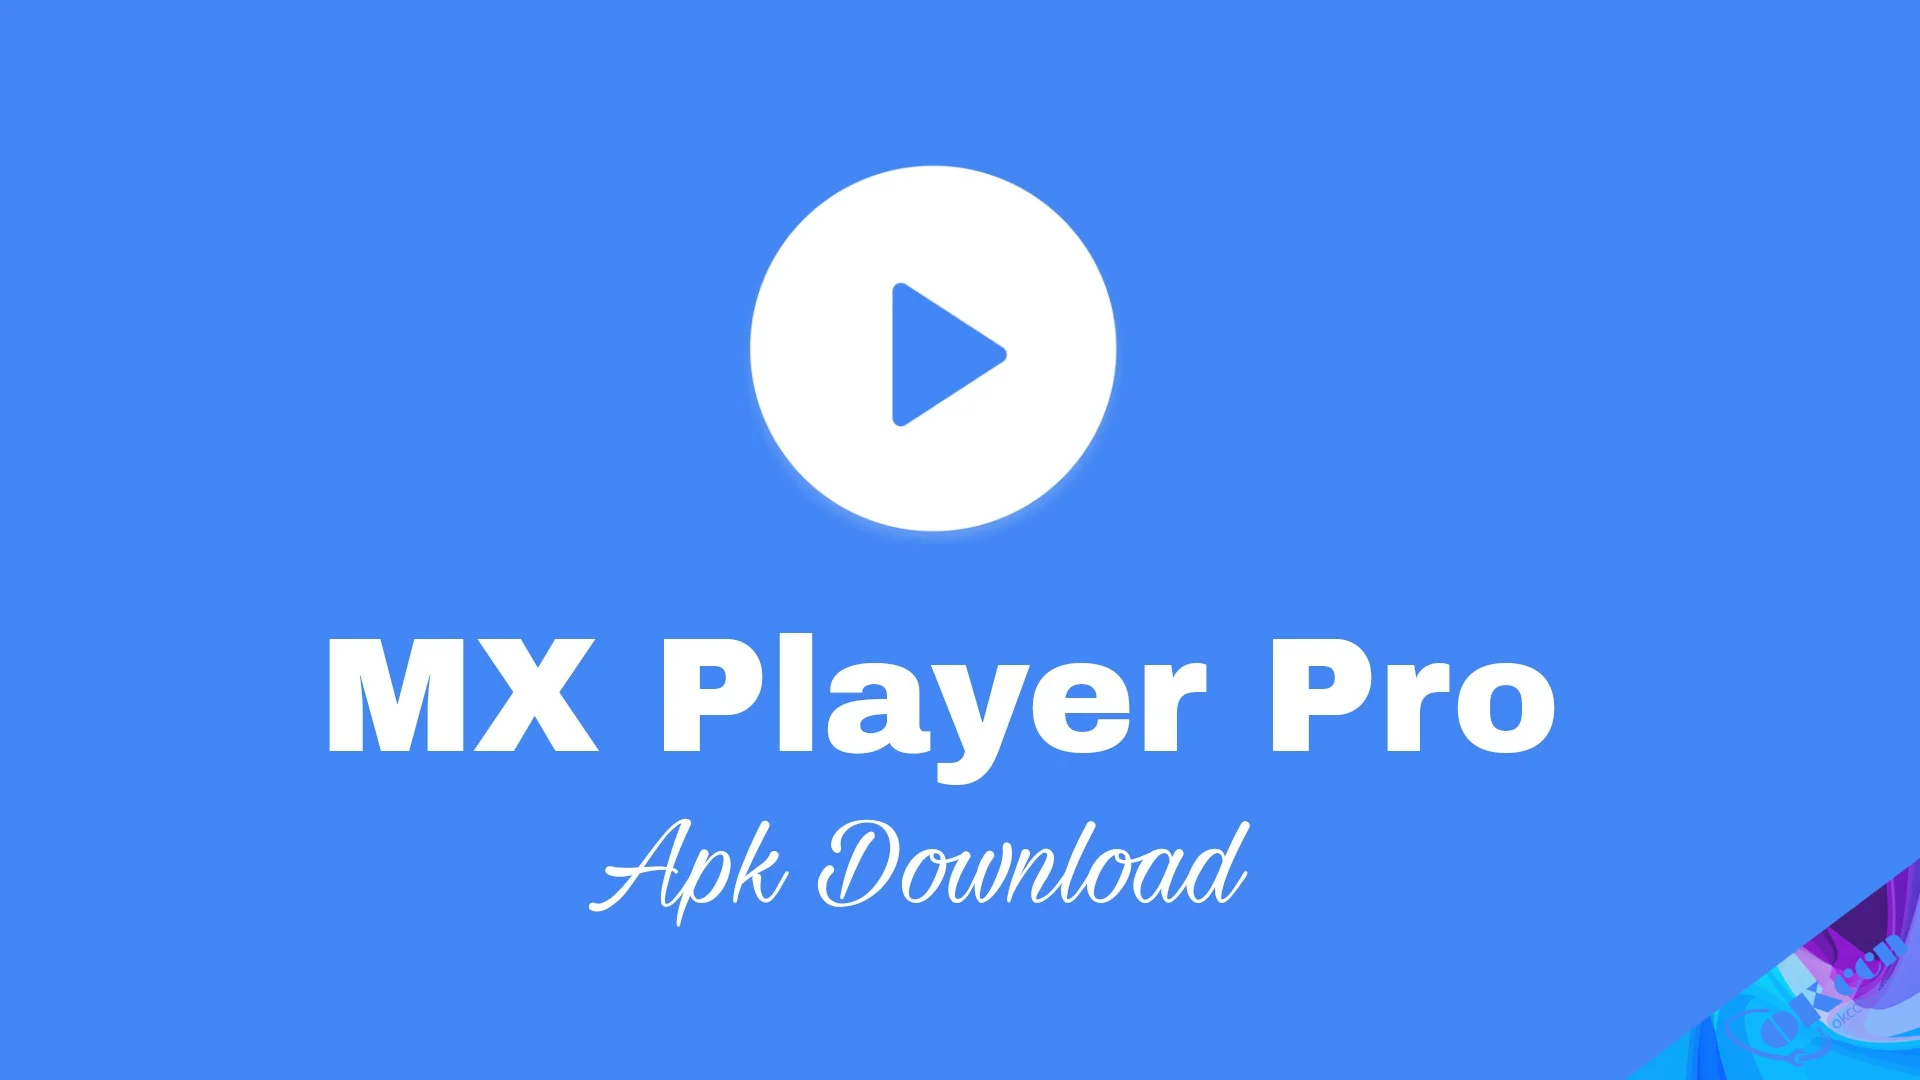 mx-player-pro-apk-download-latest-version.webp